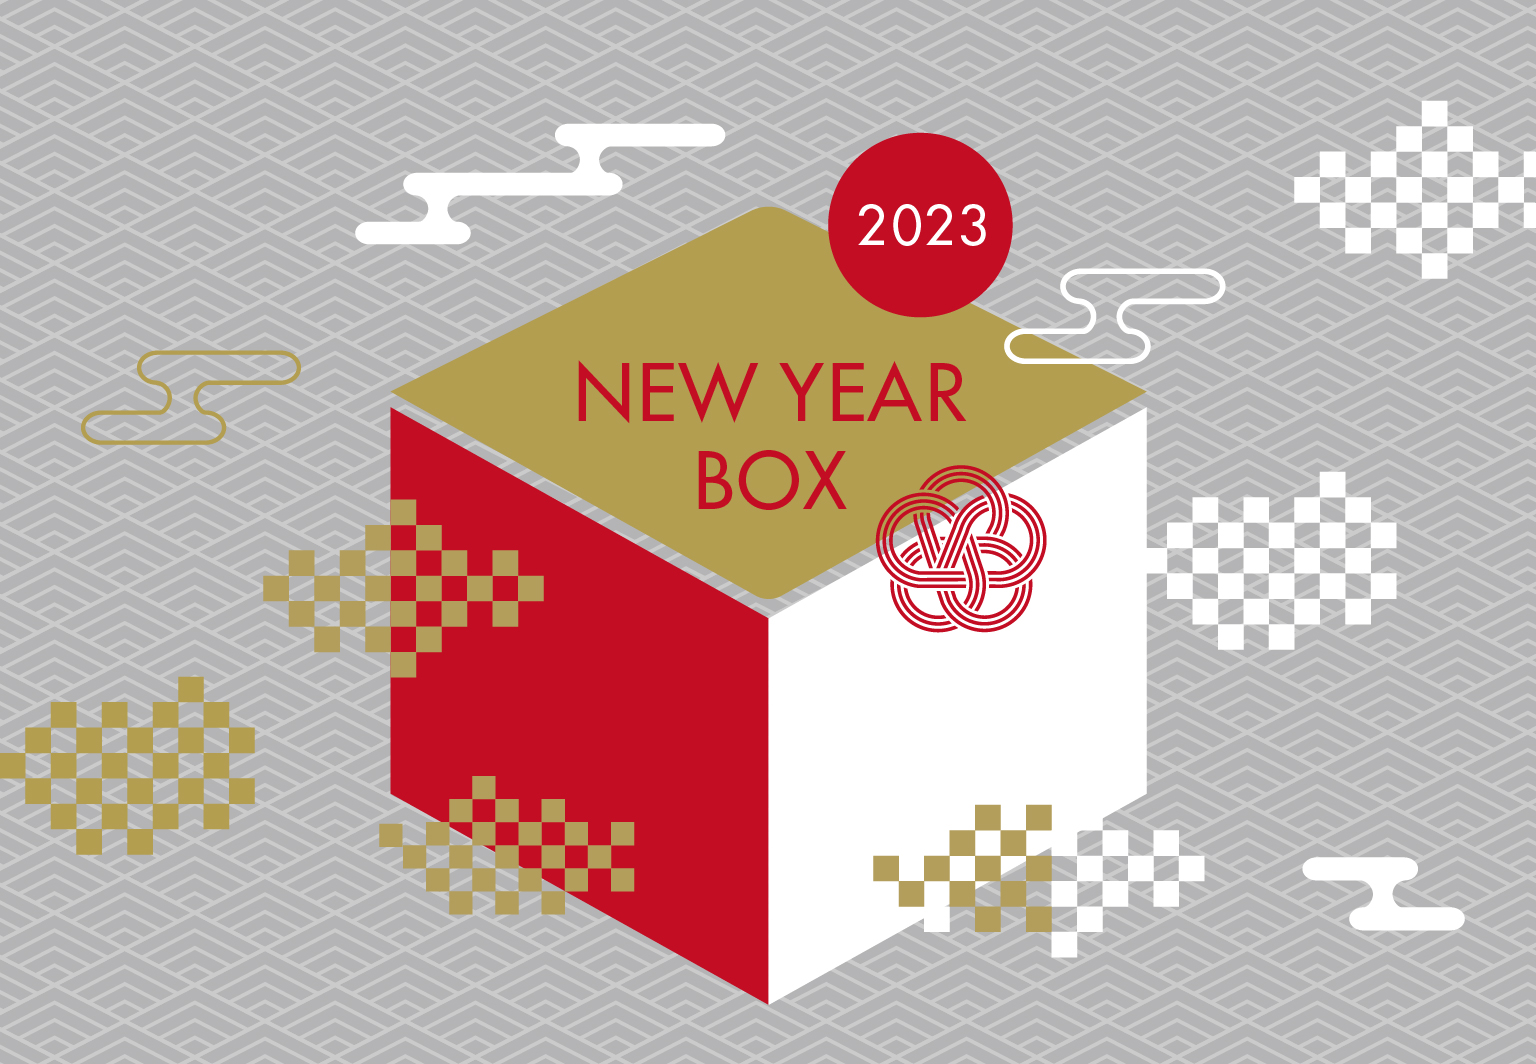 meeth】2023 NEW YEAR BOXの予約受付開始 (2022/12/30 ~ 20231/4 